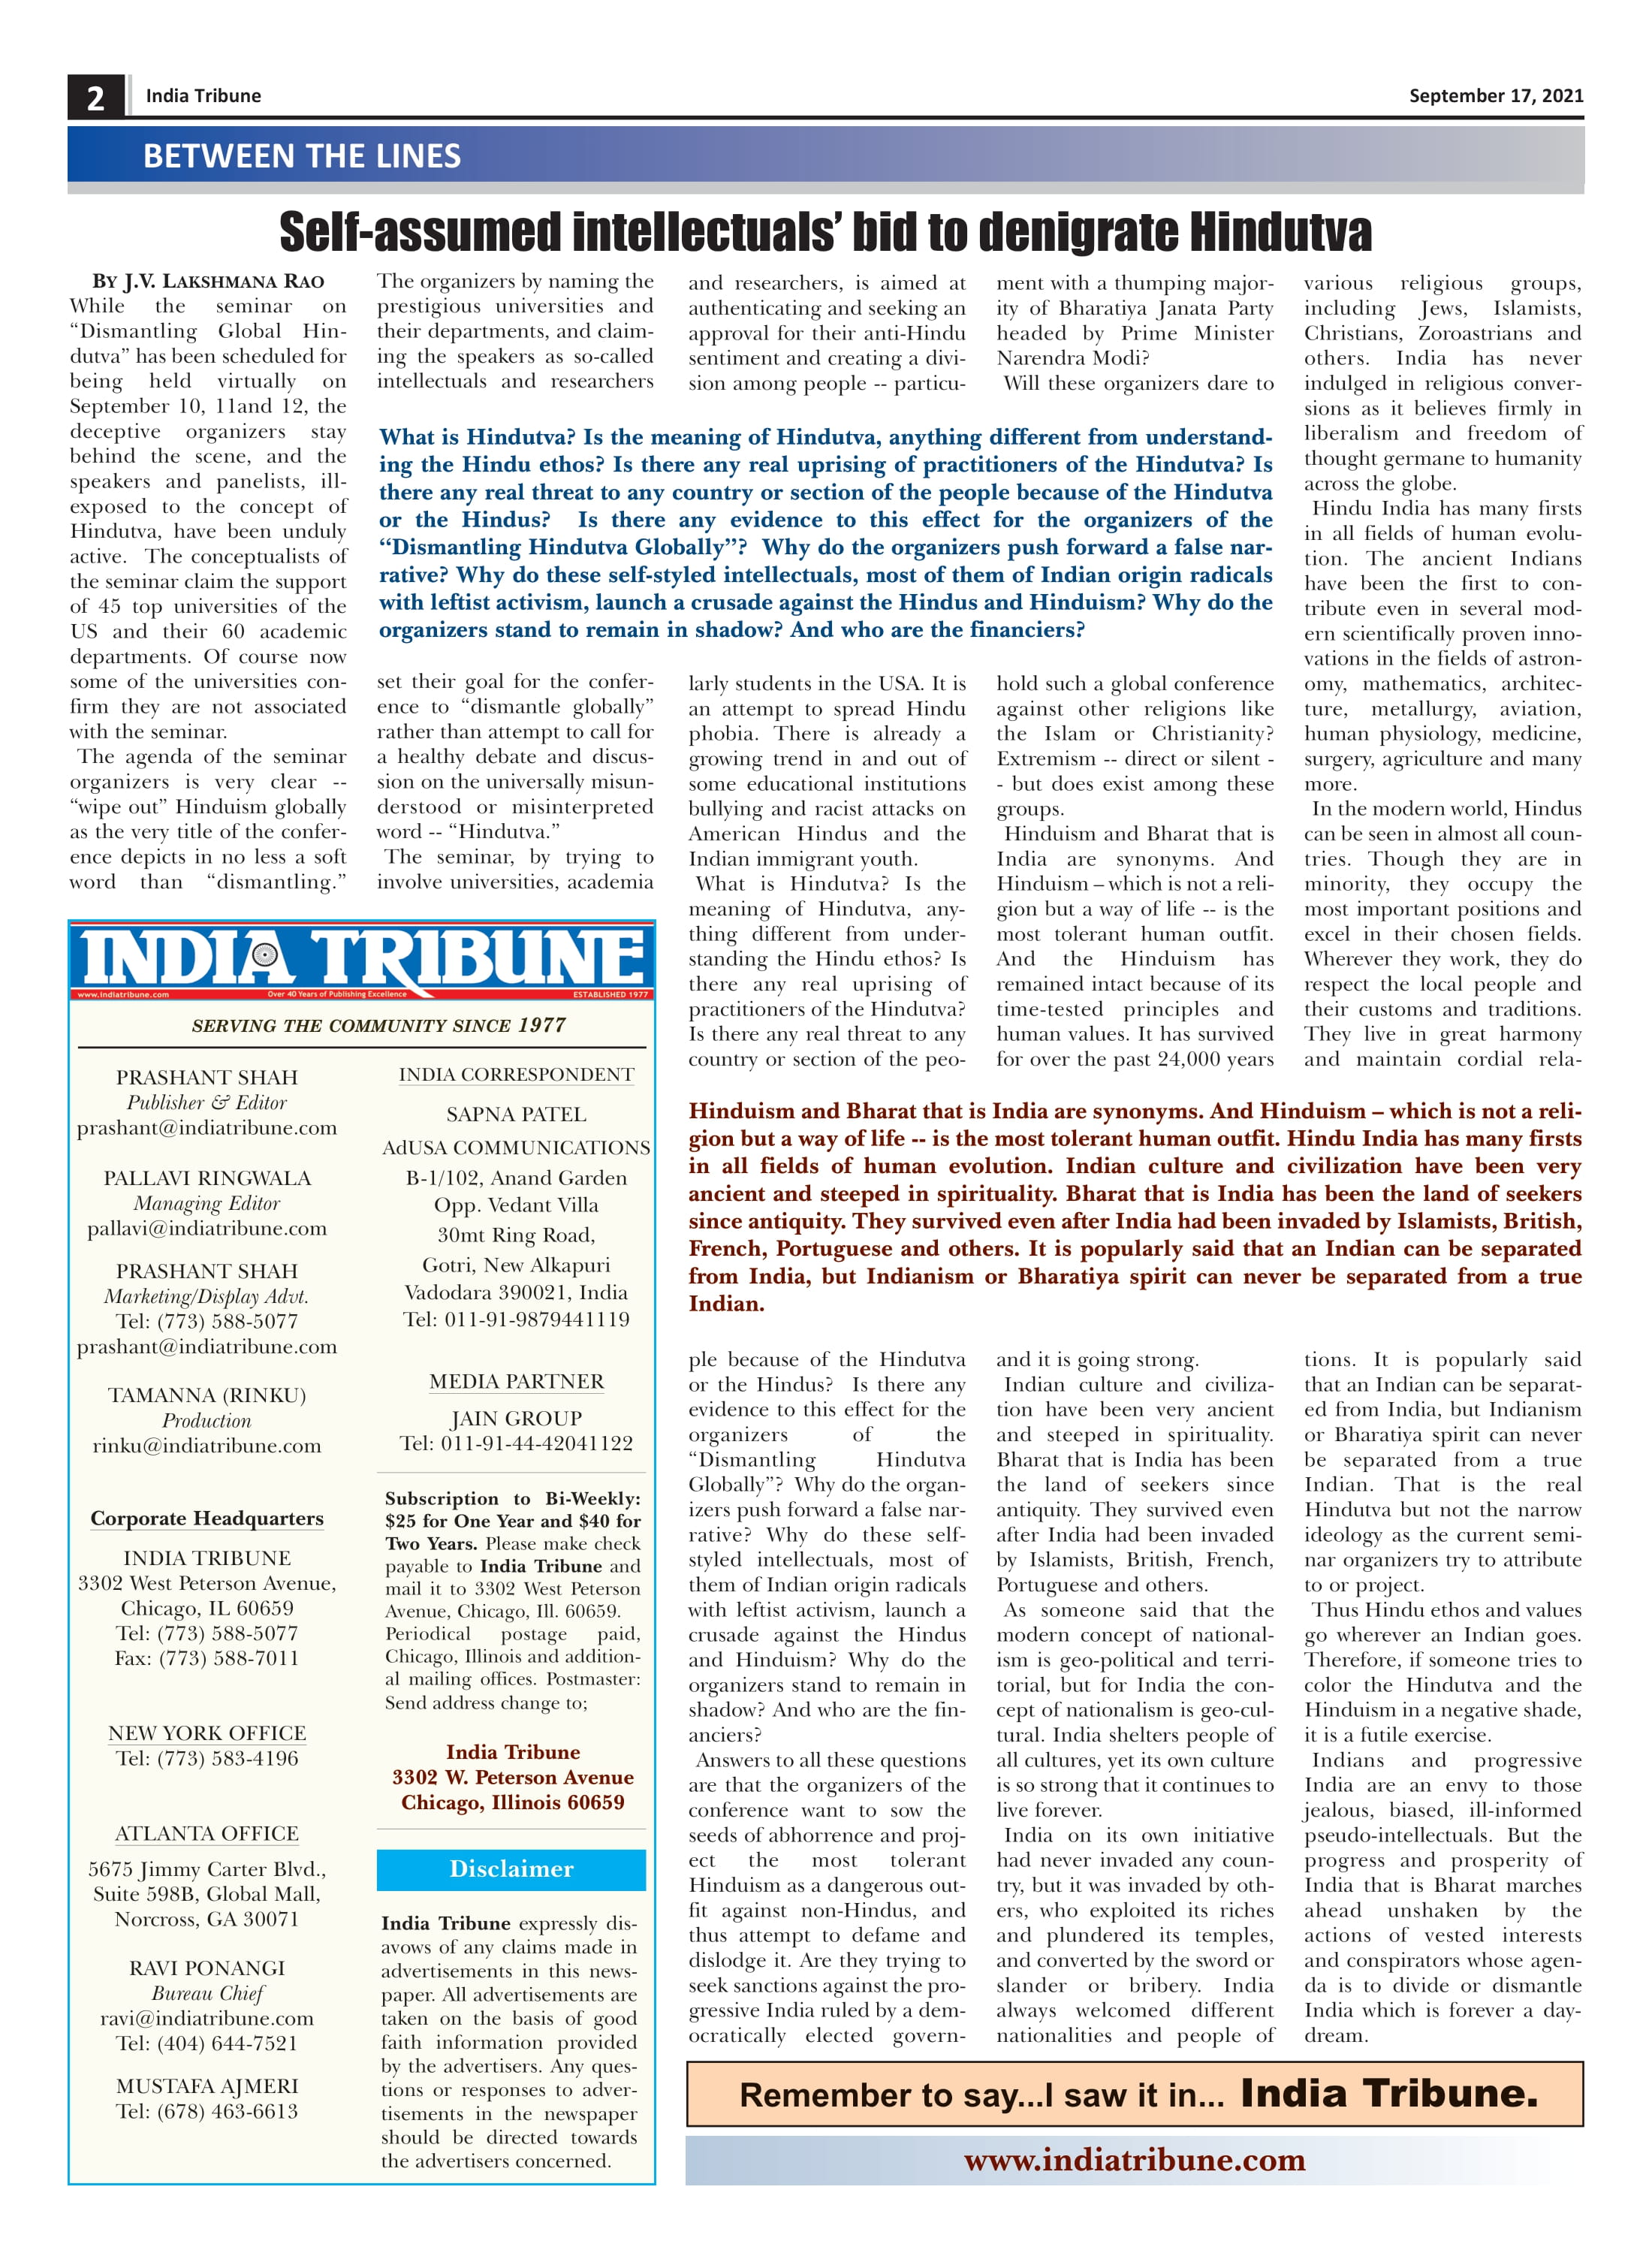 India Tribune Four